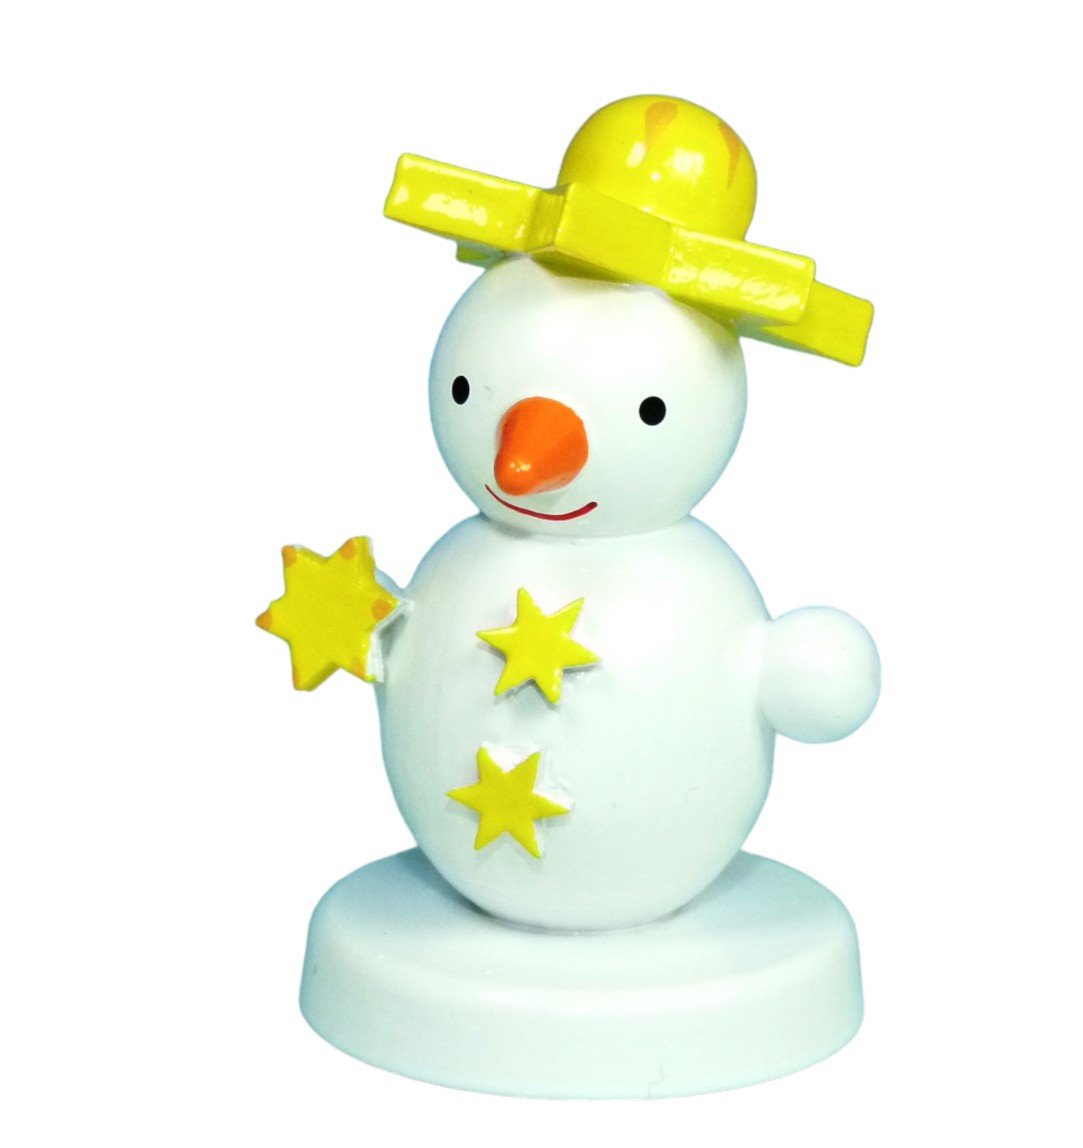 Schneemannfigur stehend mit Stern